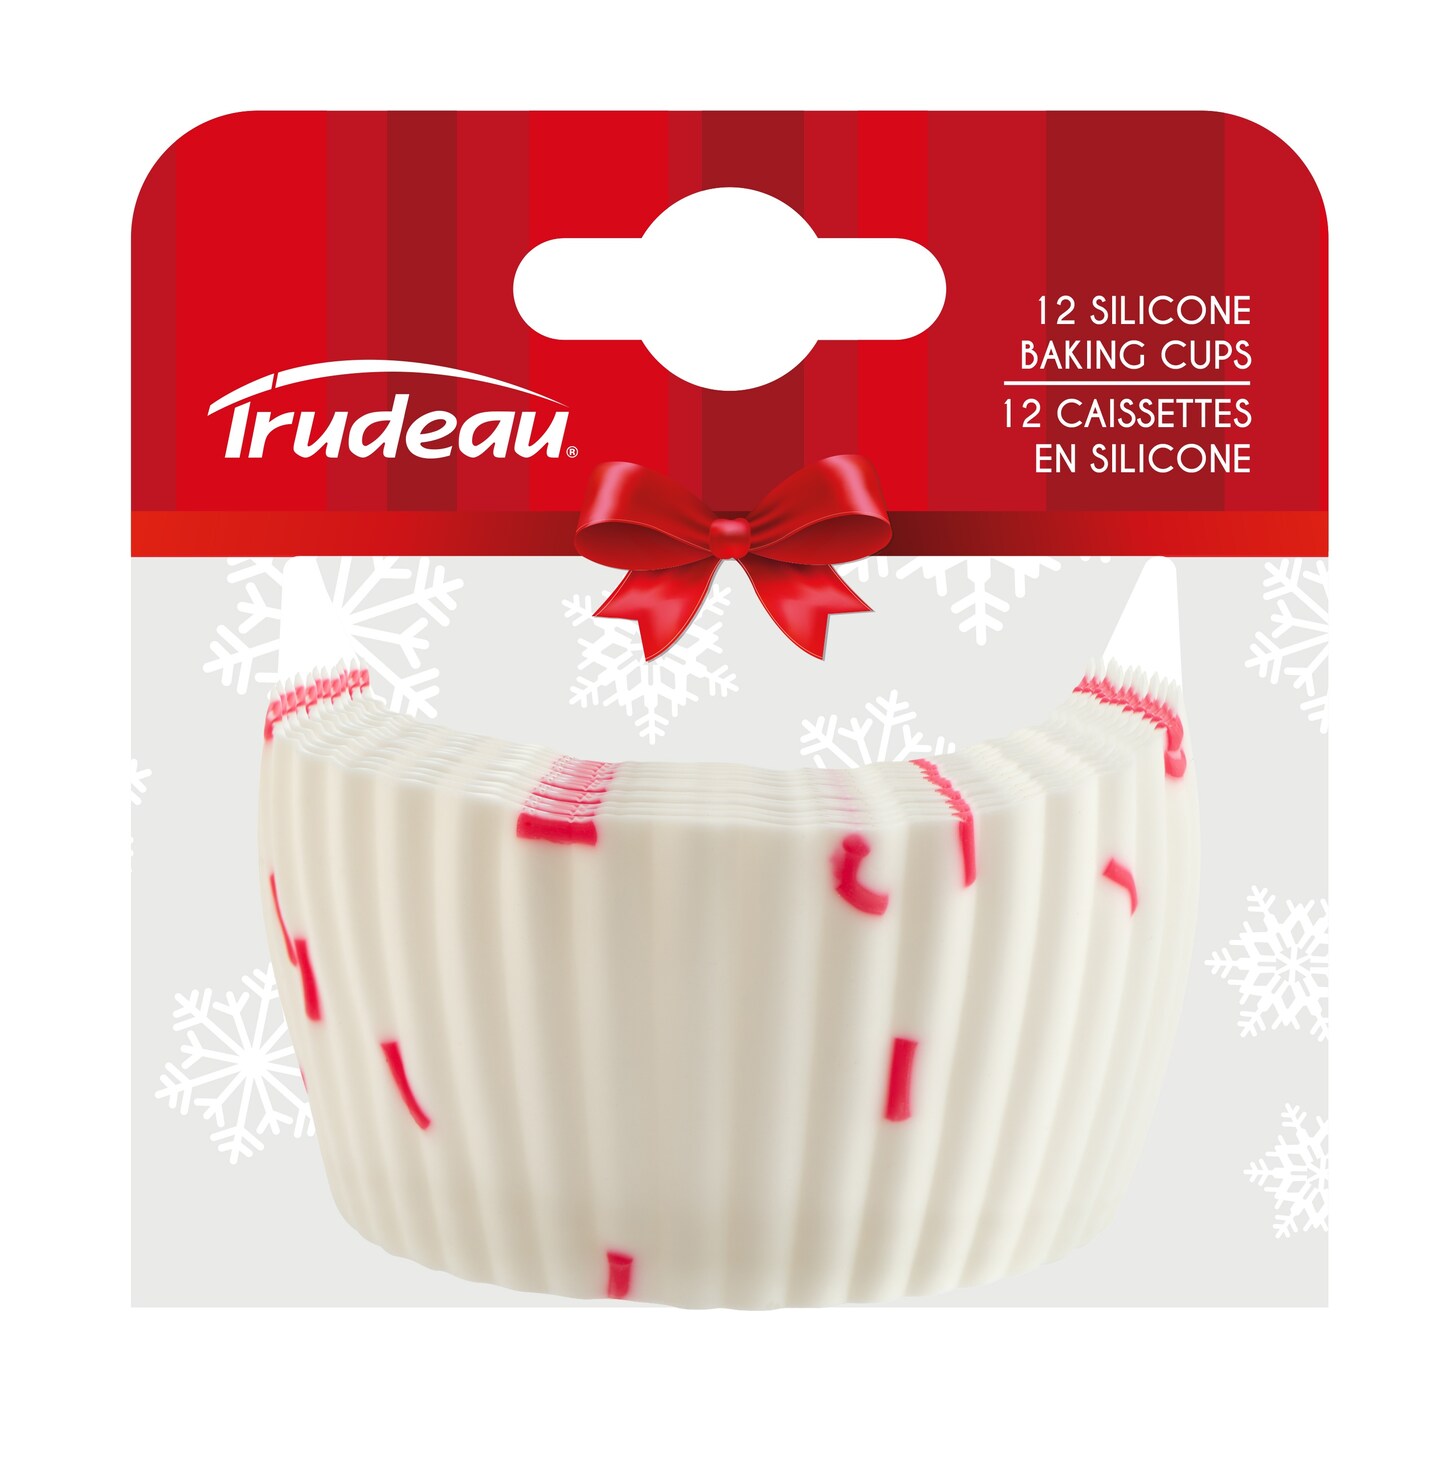 Trudeau Silicone Confetti Bunny Muffin Baking Pan 1 ct